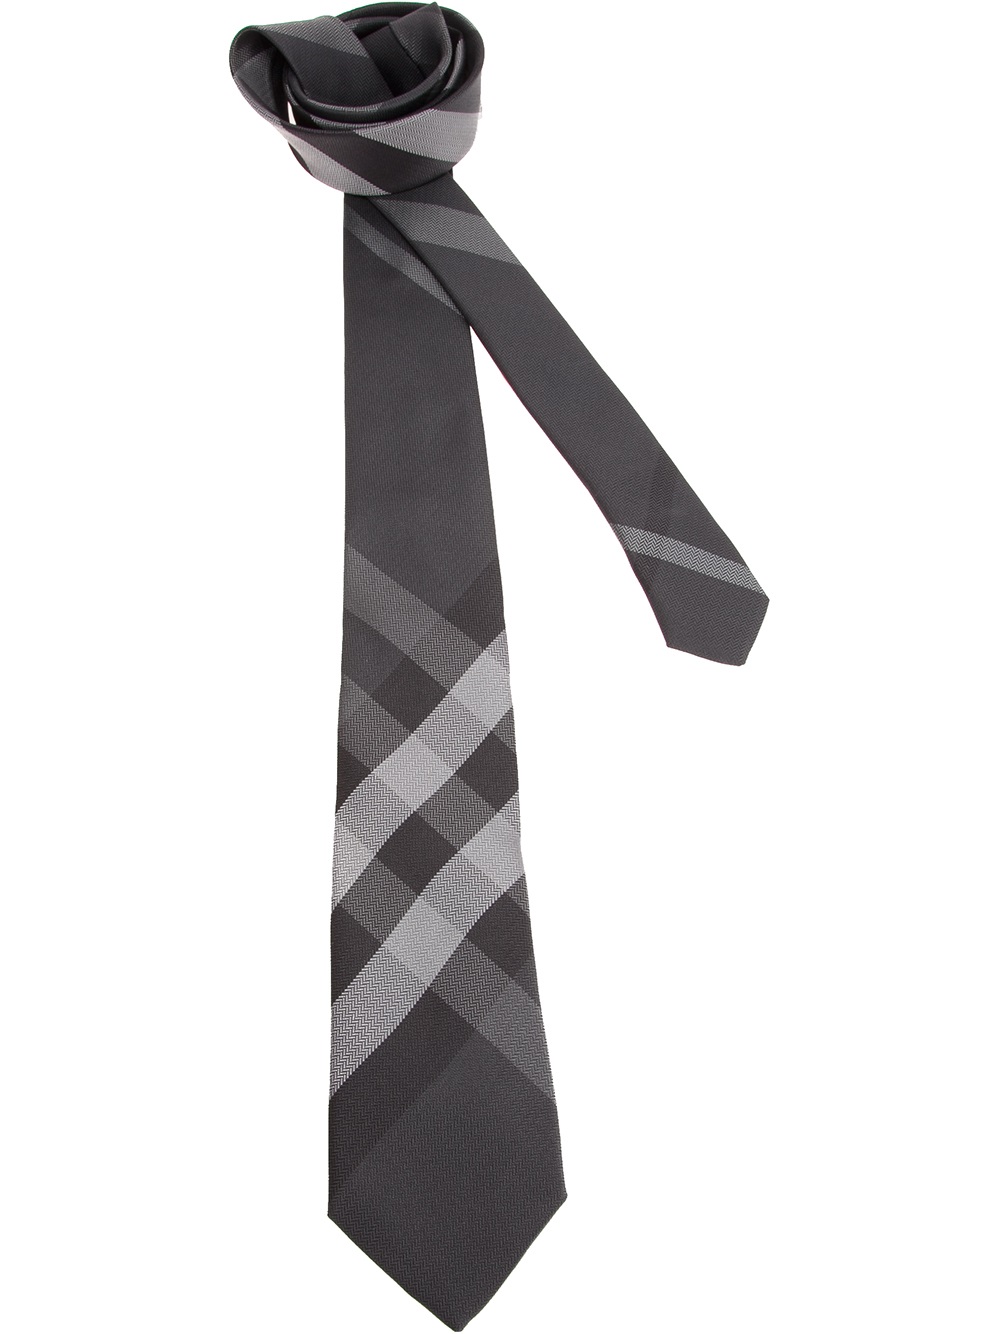 Burberry Tie in Grey (Gray) for Men - Lyst